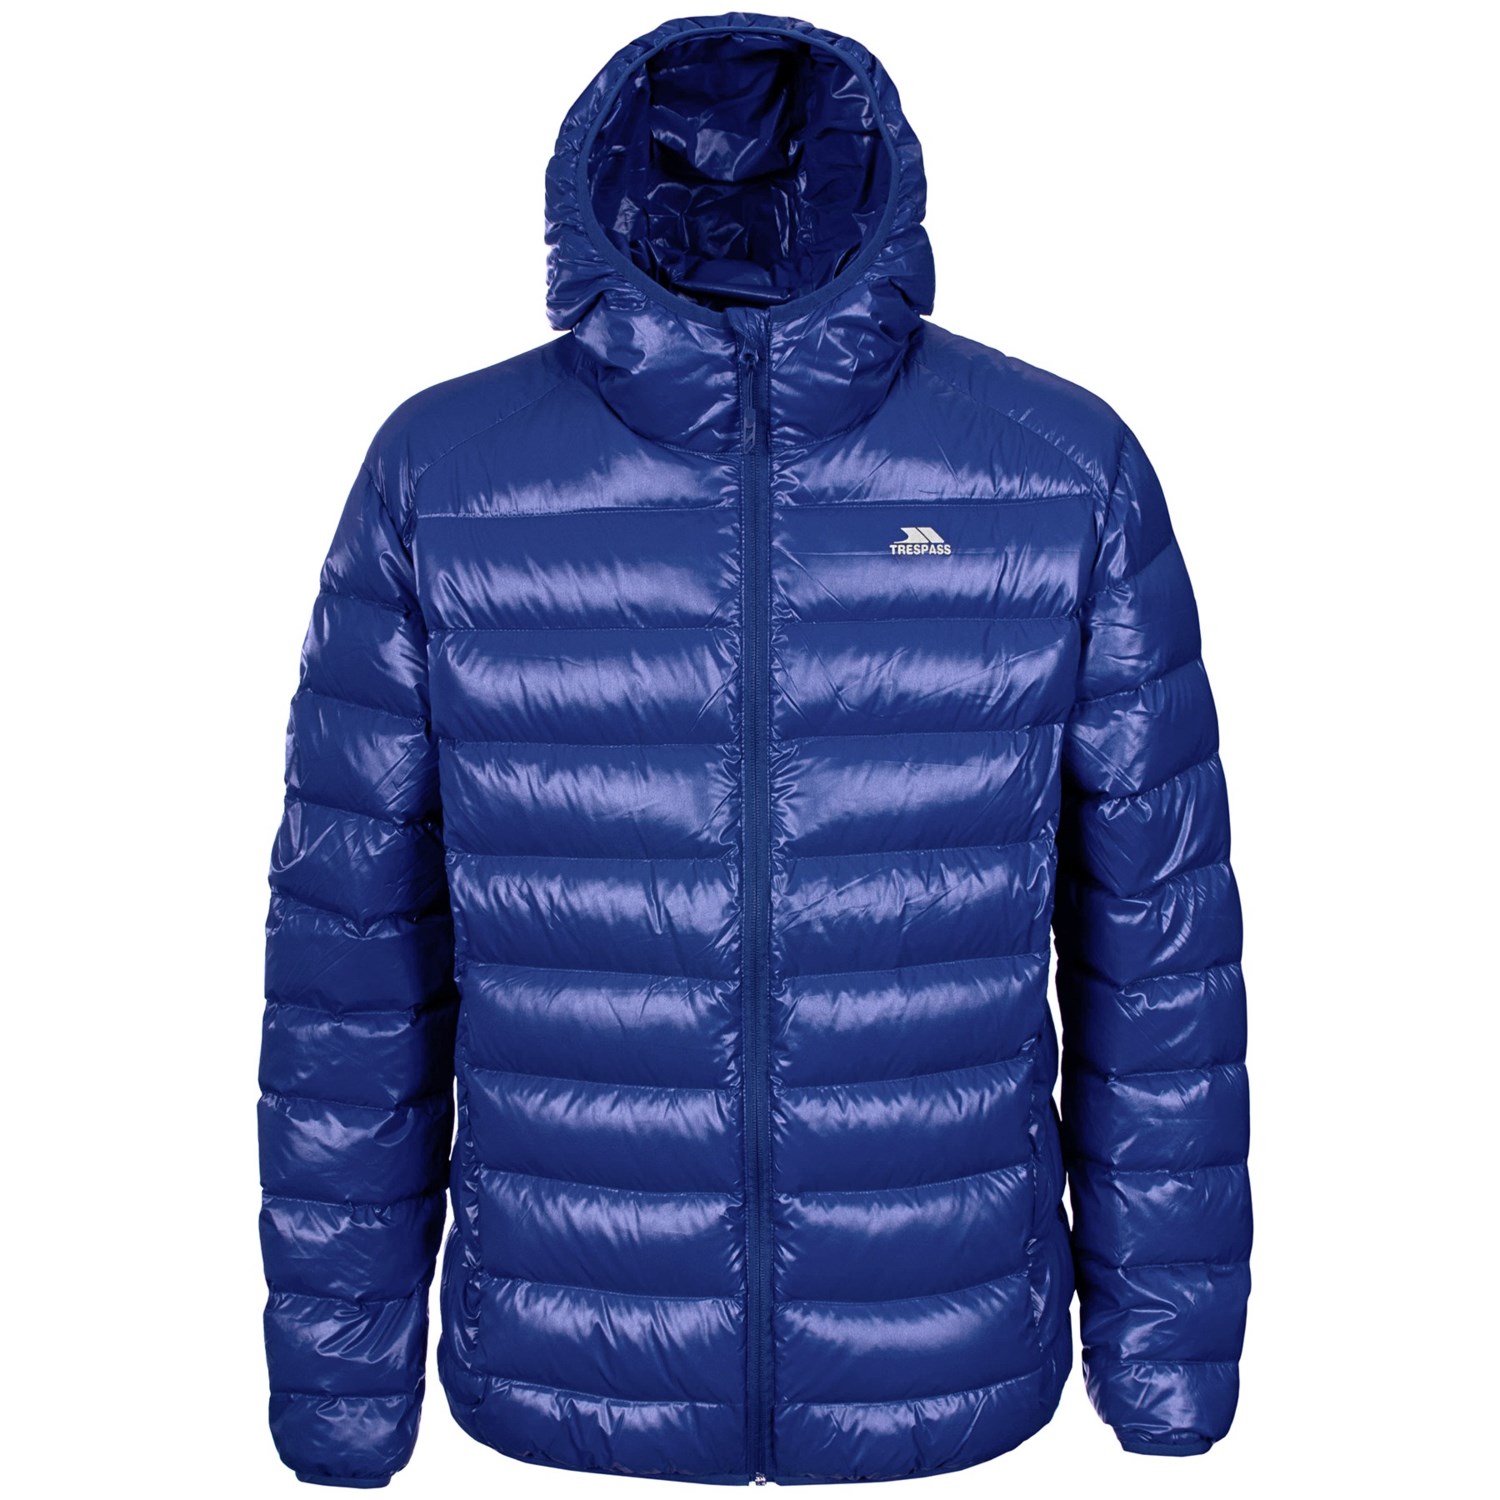 Trespass Ramirez Down Ski Jacket (For Men) 8142T - Save 72%